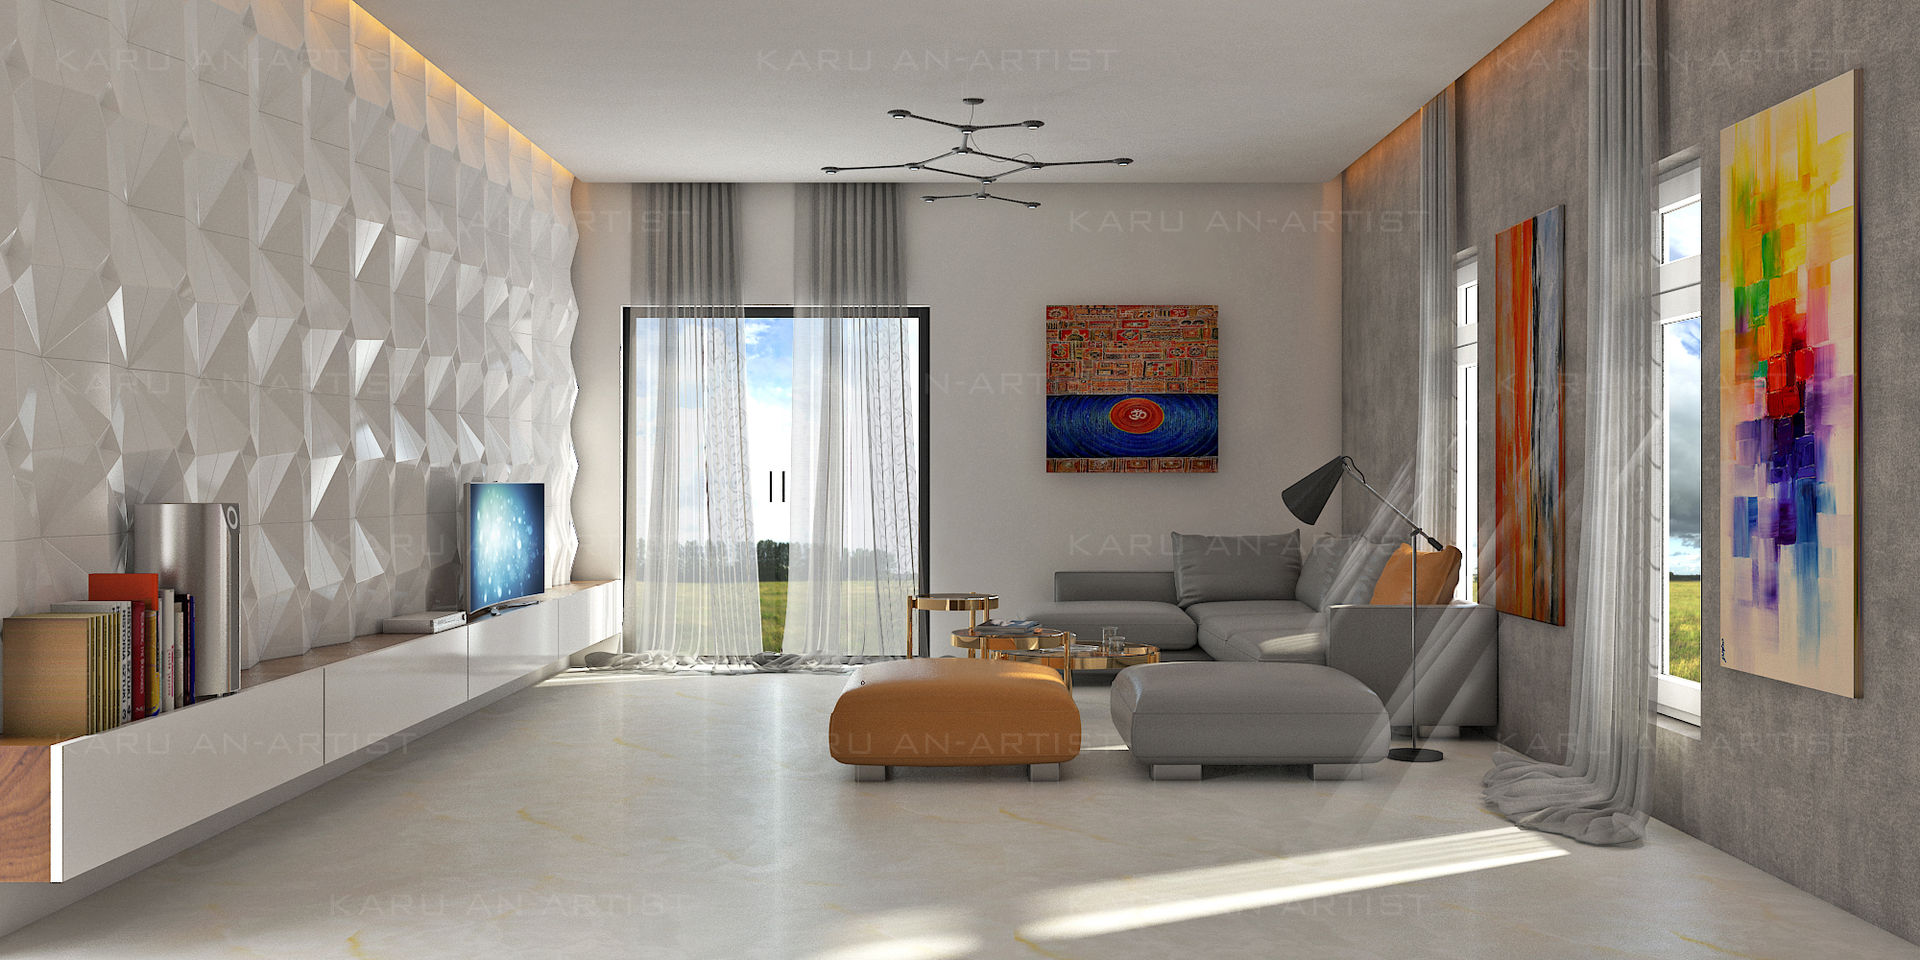 A Modern Living Room, KARU AN ARTIST KARU AN ARTIST Salas modernas